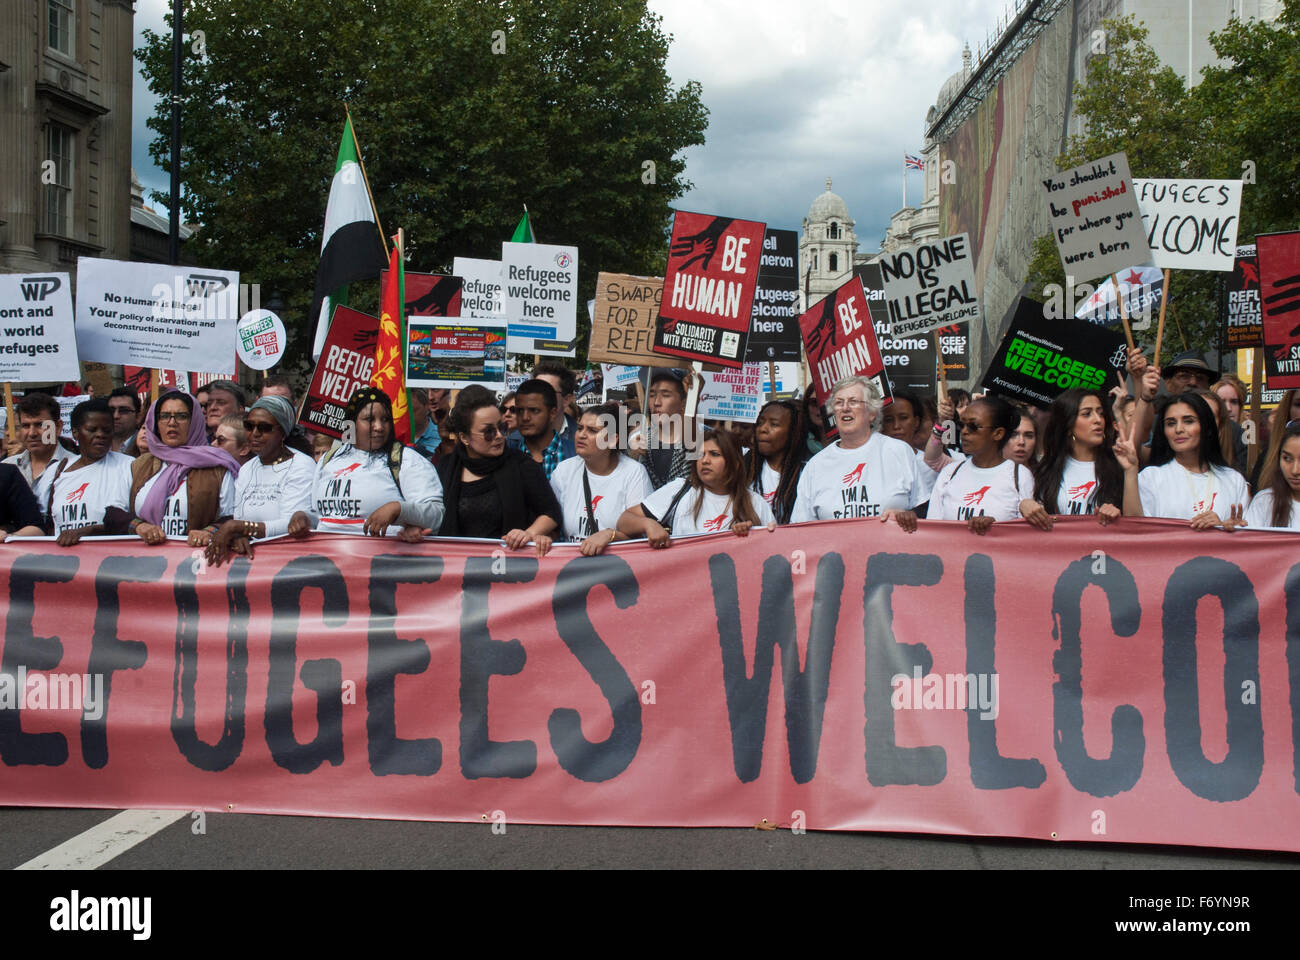 "Los refugiados bienvenidos aquí' de demostración. Poster/ banner "Los refugiados son bienvenidos aquí" Foto de stock